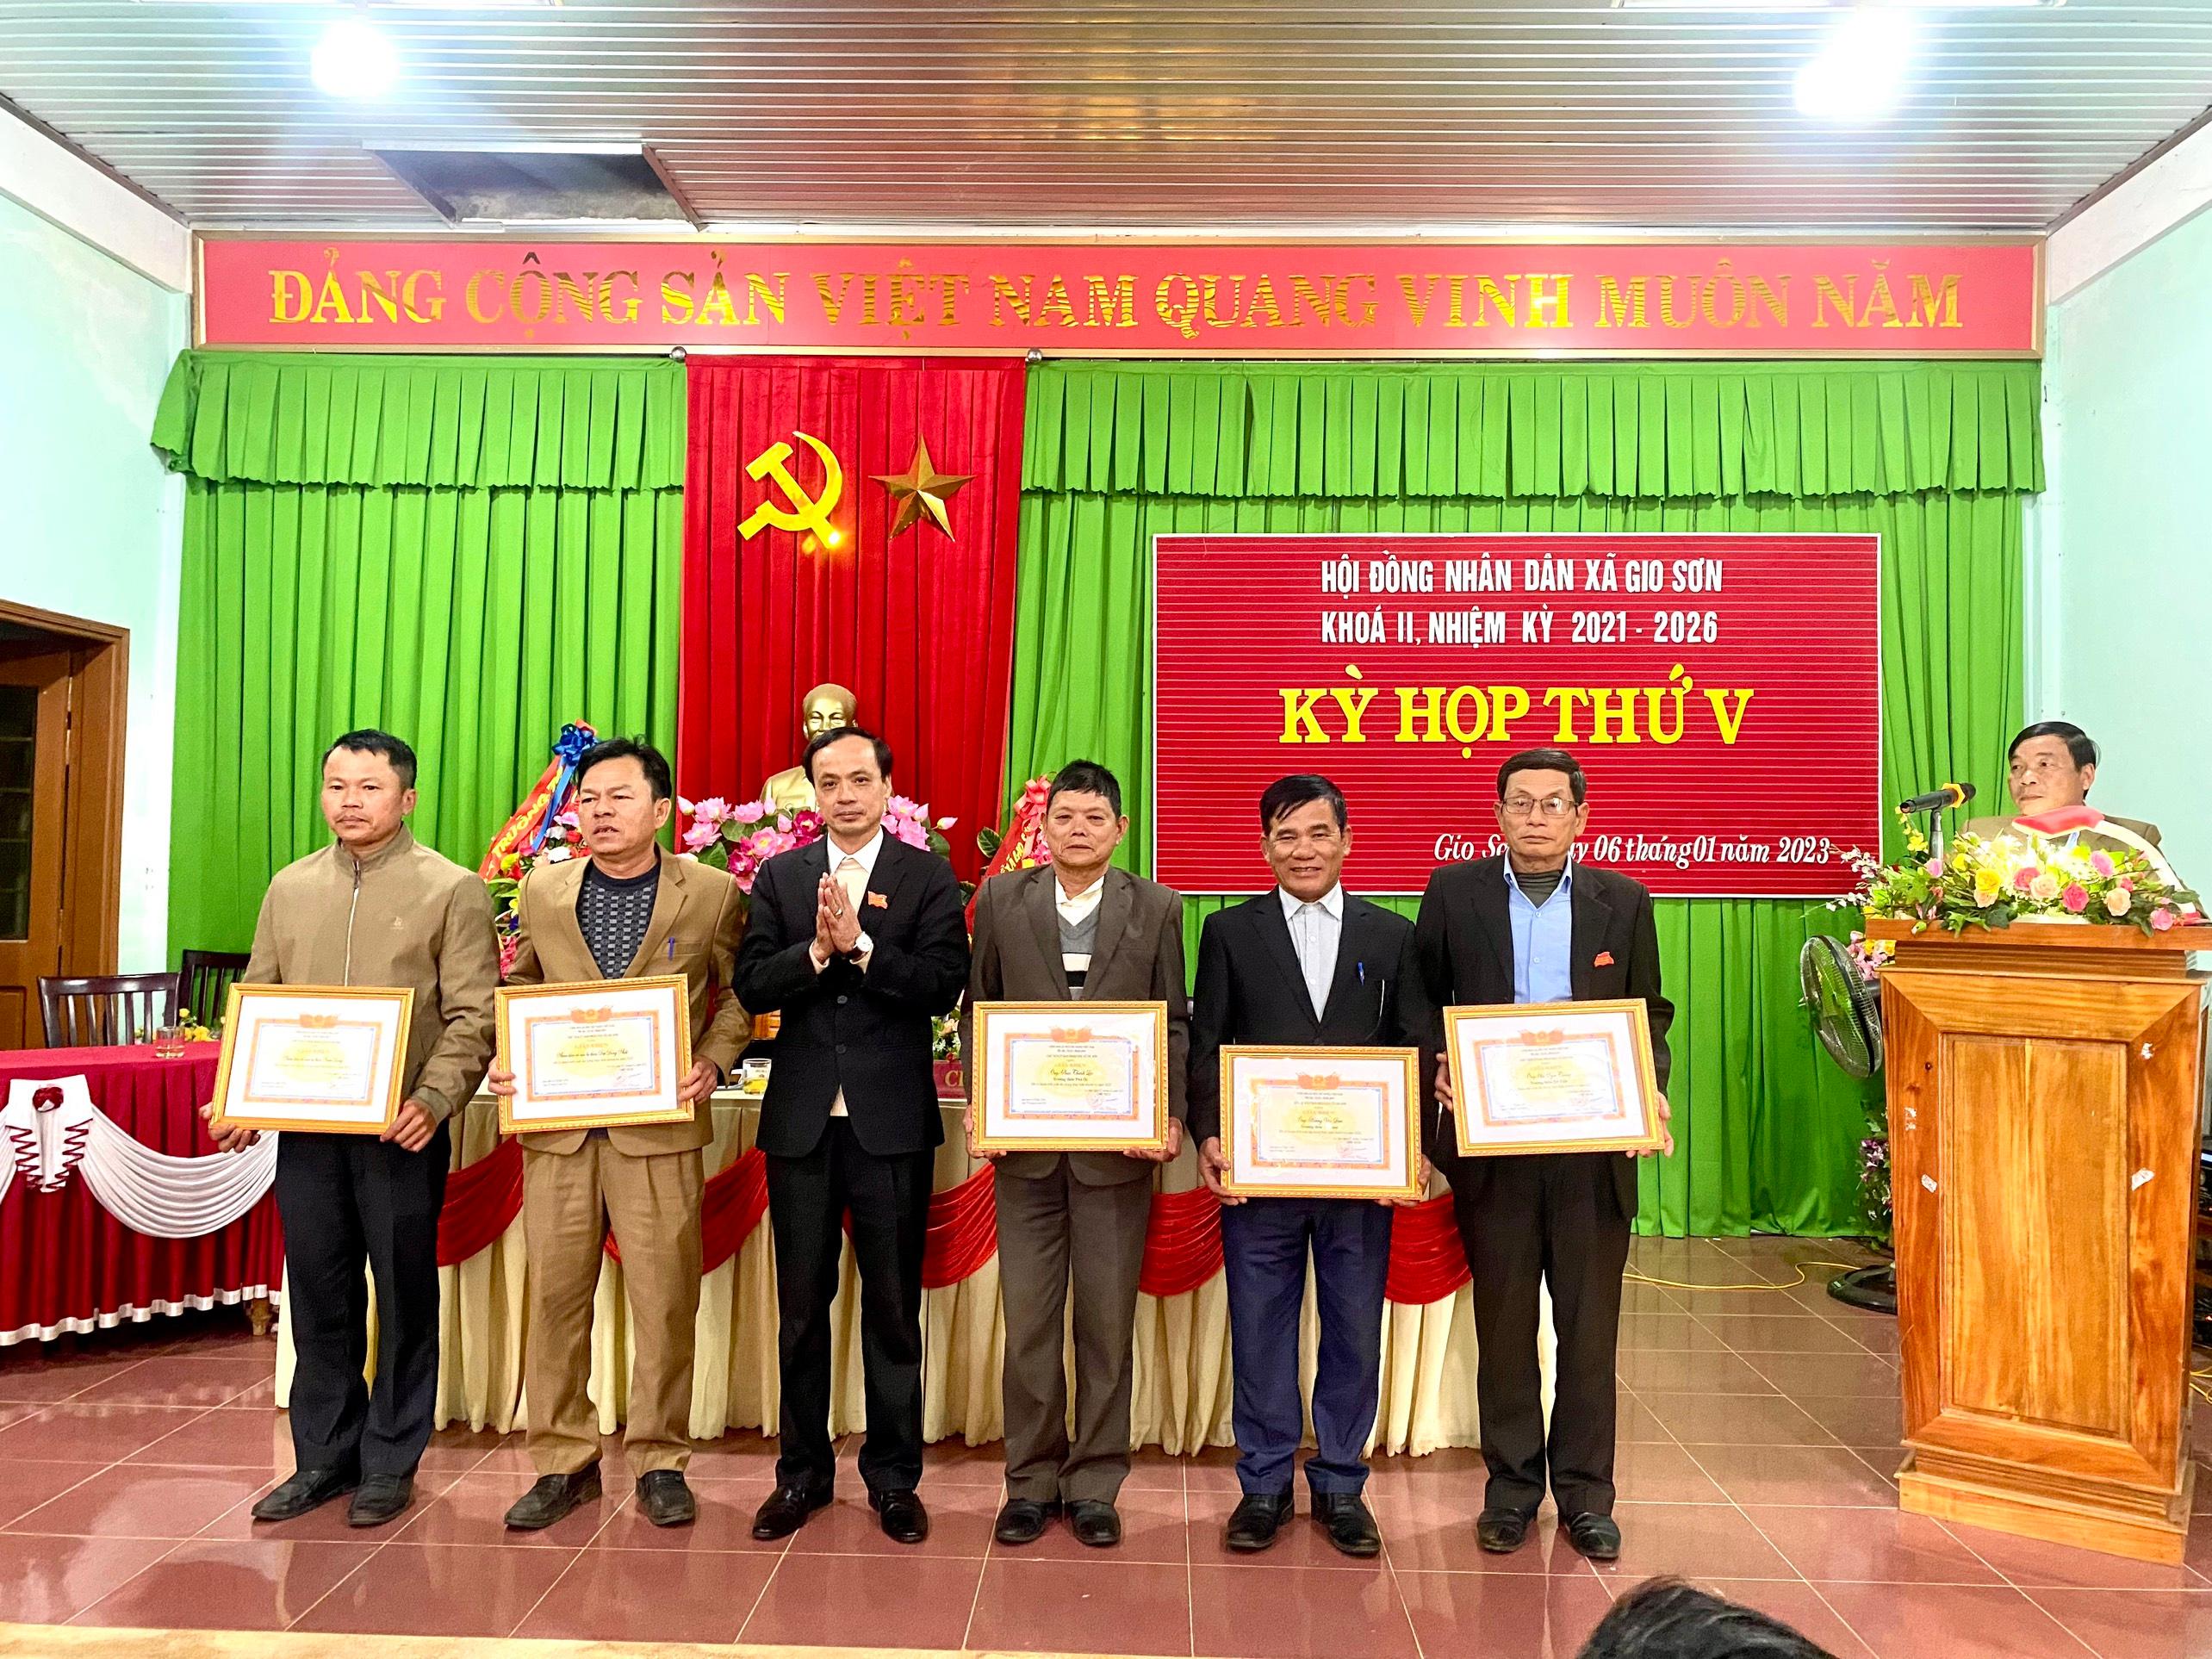 HĐND xã Gio Sơn đã tổ chức kỳ họp thứ 5, khóa II nhiệm kỳ 2021-2026